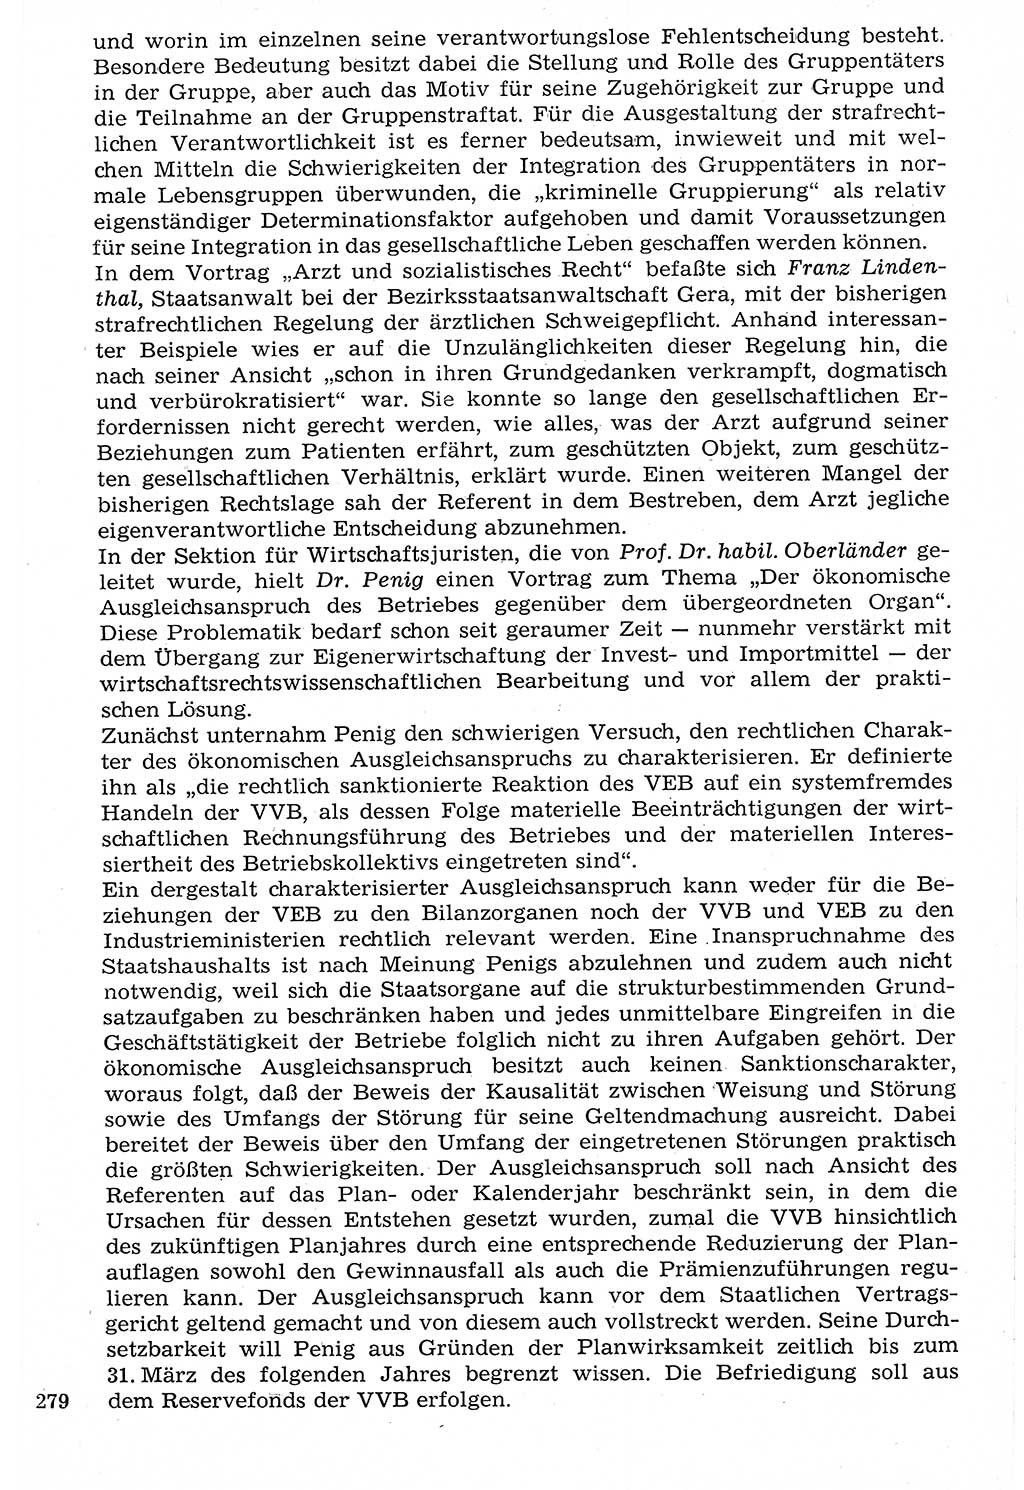 Staat und Recht (StuR), 17. Jahrgang [Deutsche Demokratische Republik (DDR)] 1968, Seite 279 (StuR DDR 1968, S. 279)